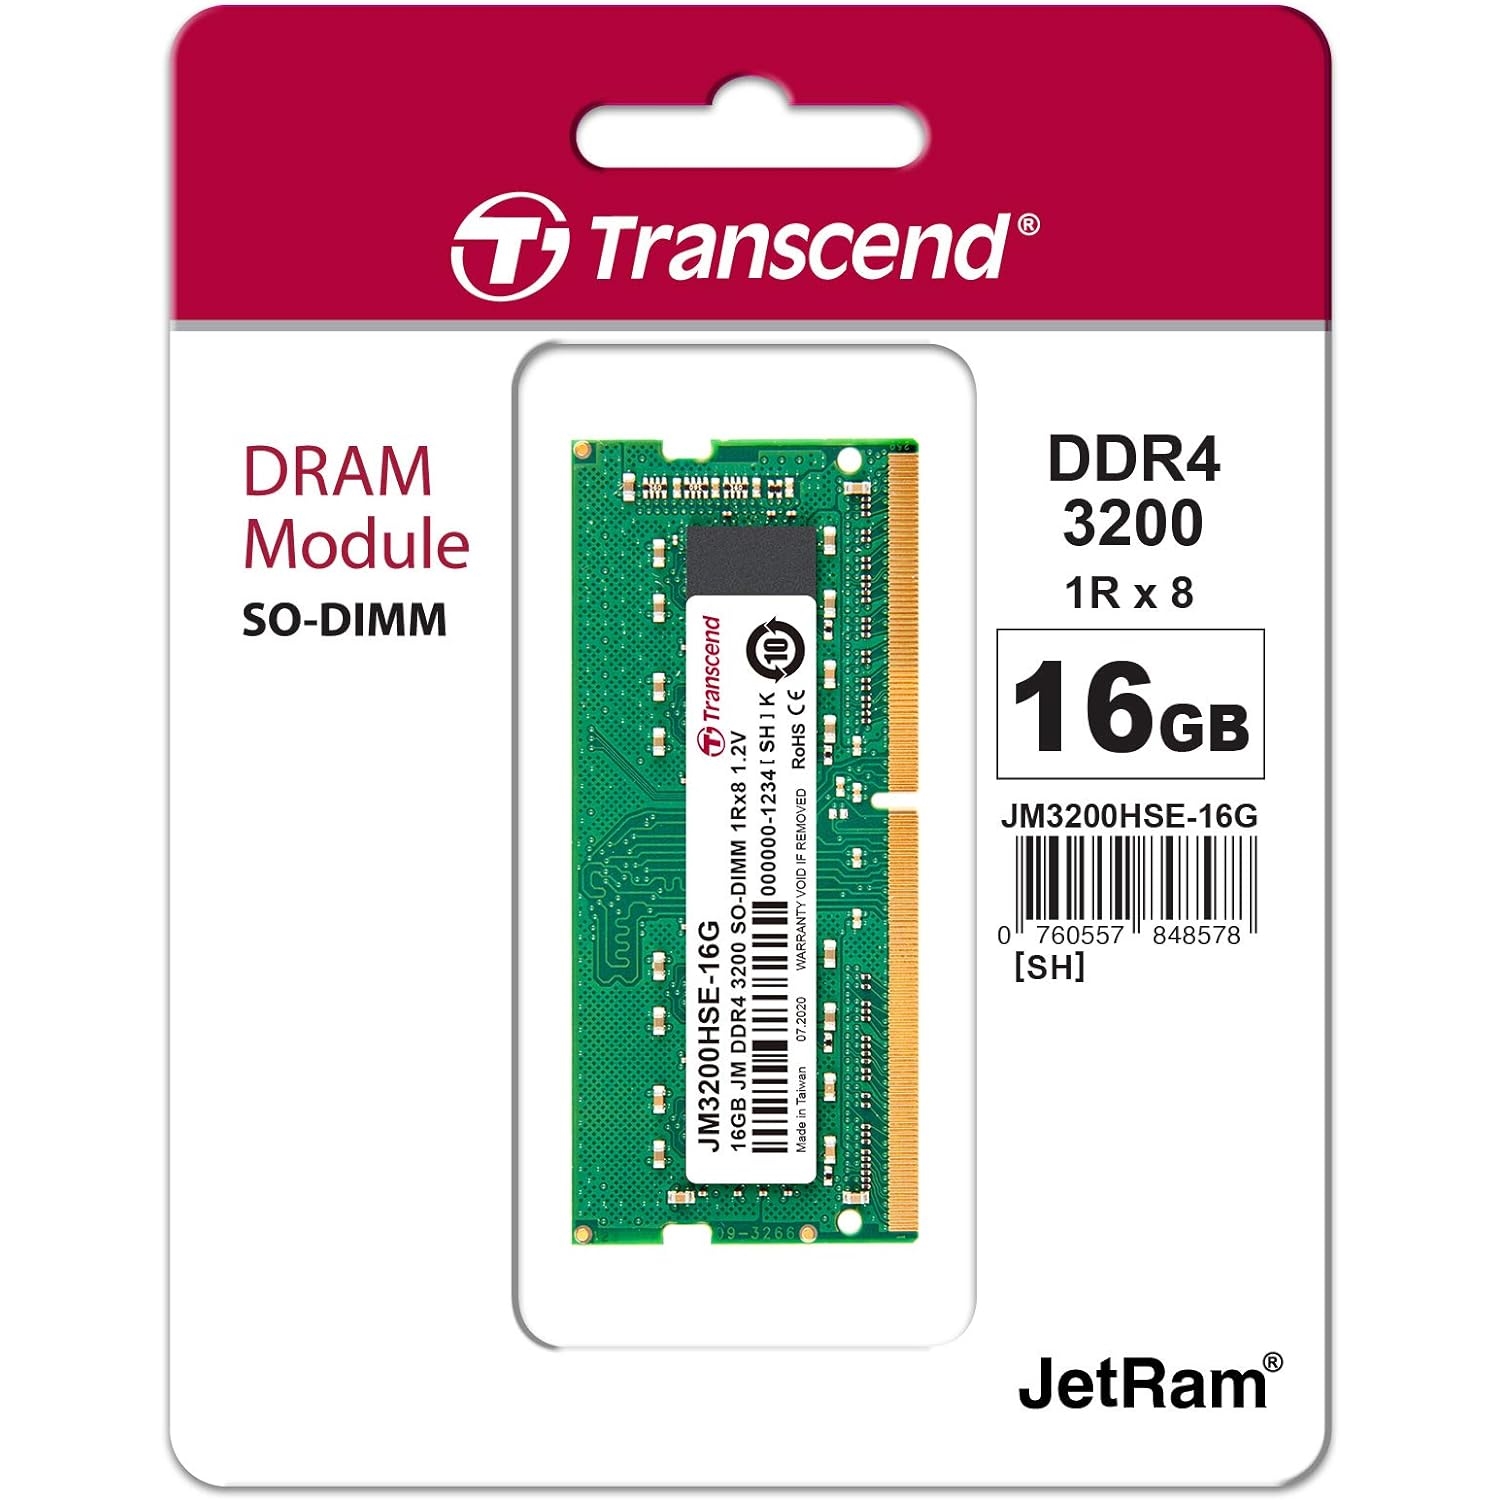 TRANSCEND 16GB 3200Mhz DDR4 1.2V JM3200HSB-16G NOTEBOOK RAM